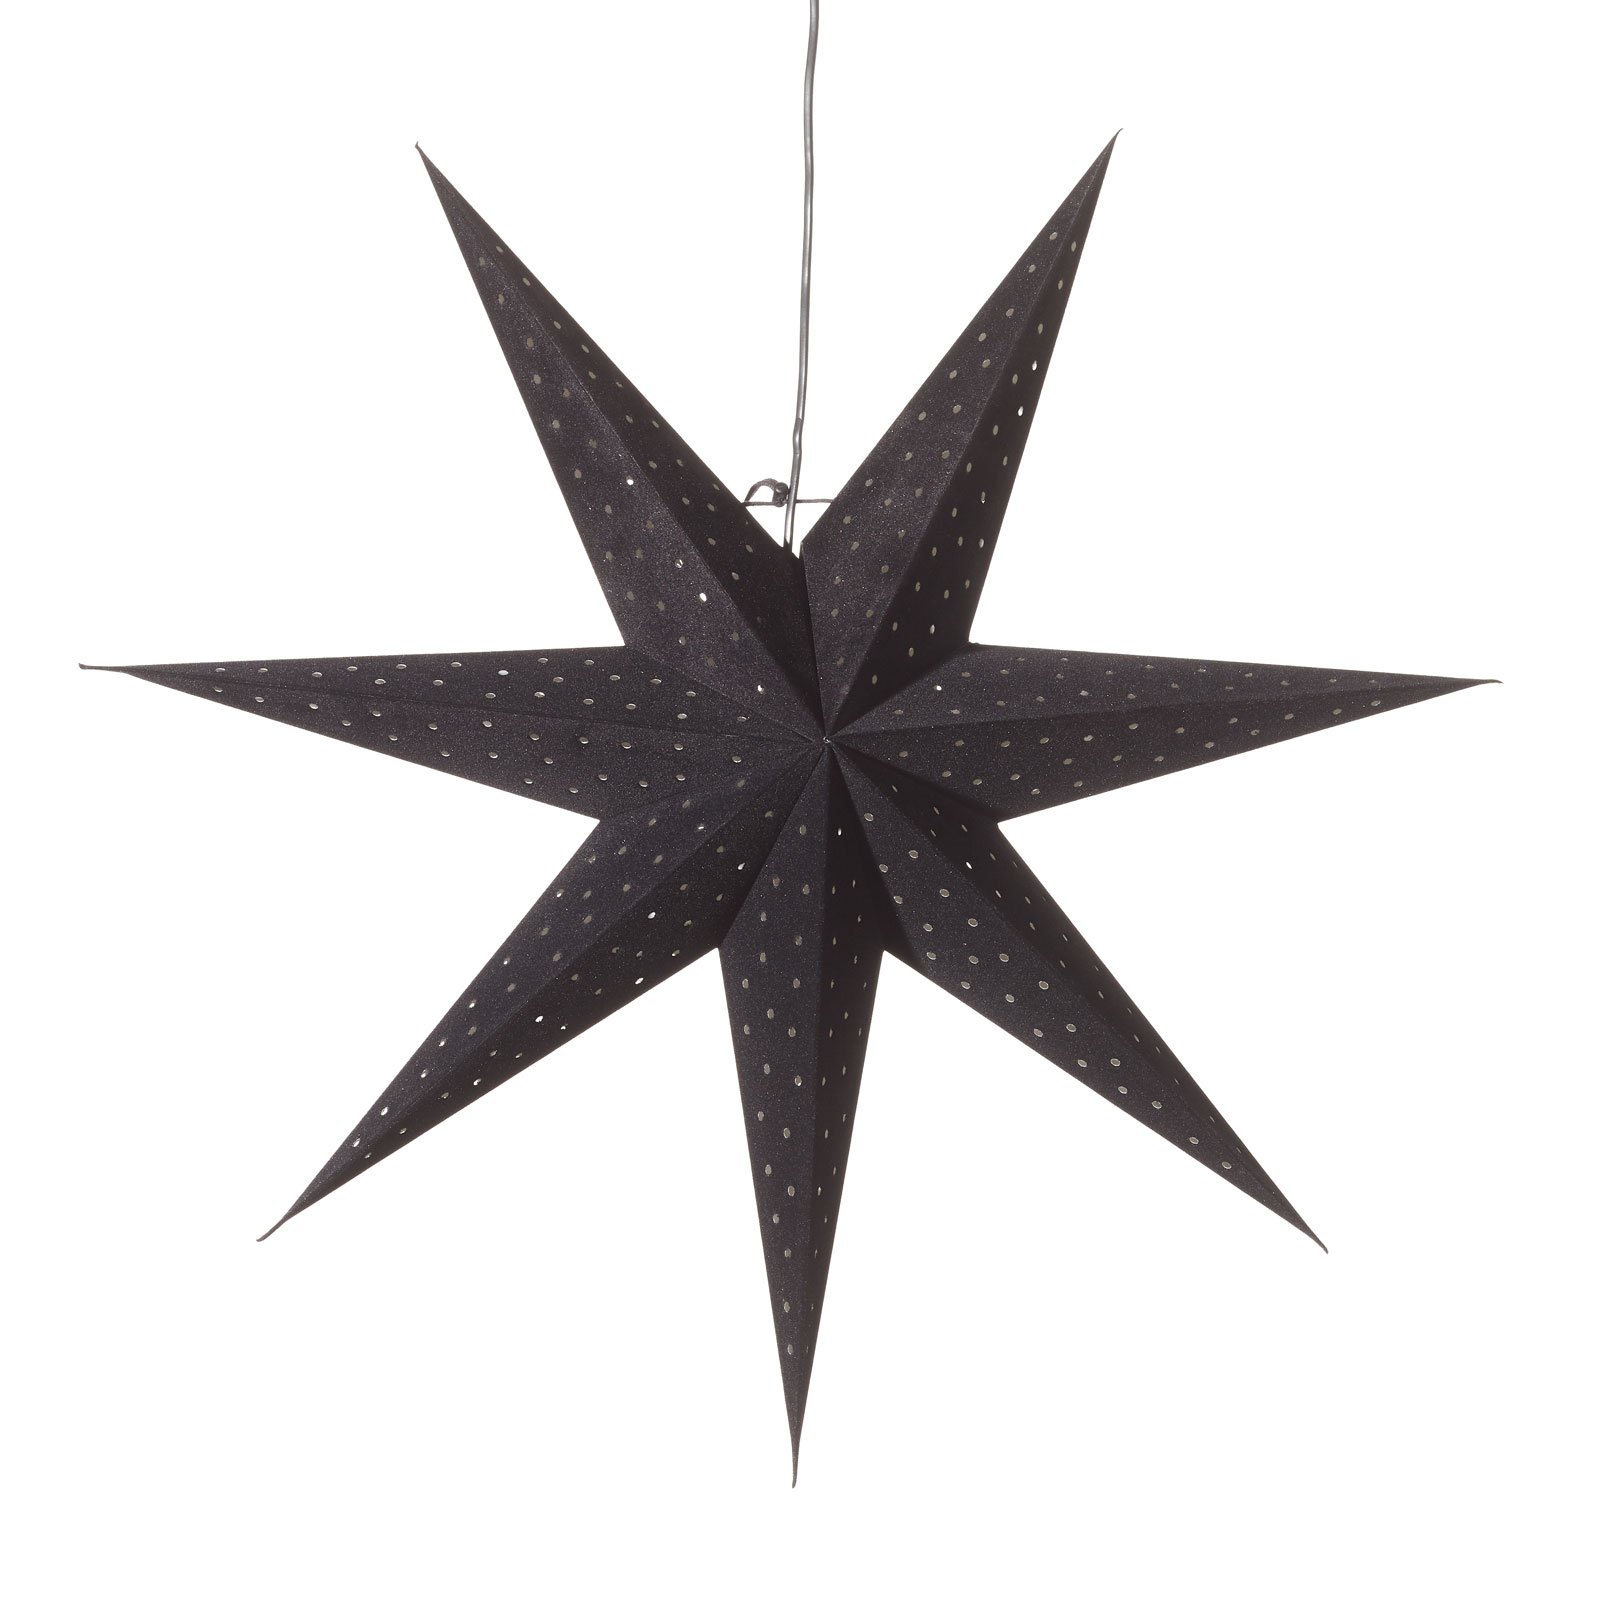 Tähti Clara ripustettavaksi, samettilook Ø 75 cm, musta